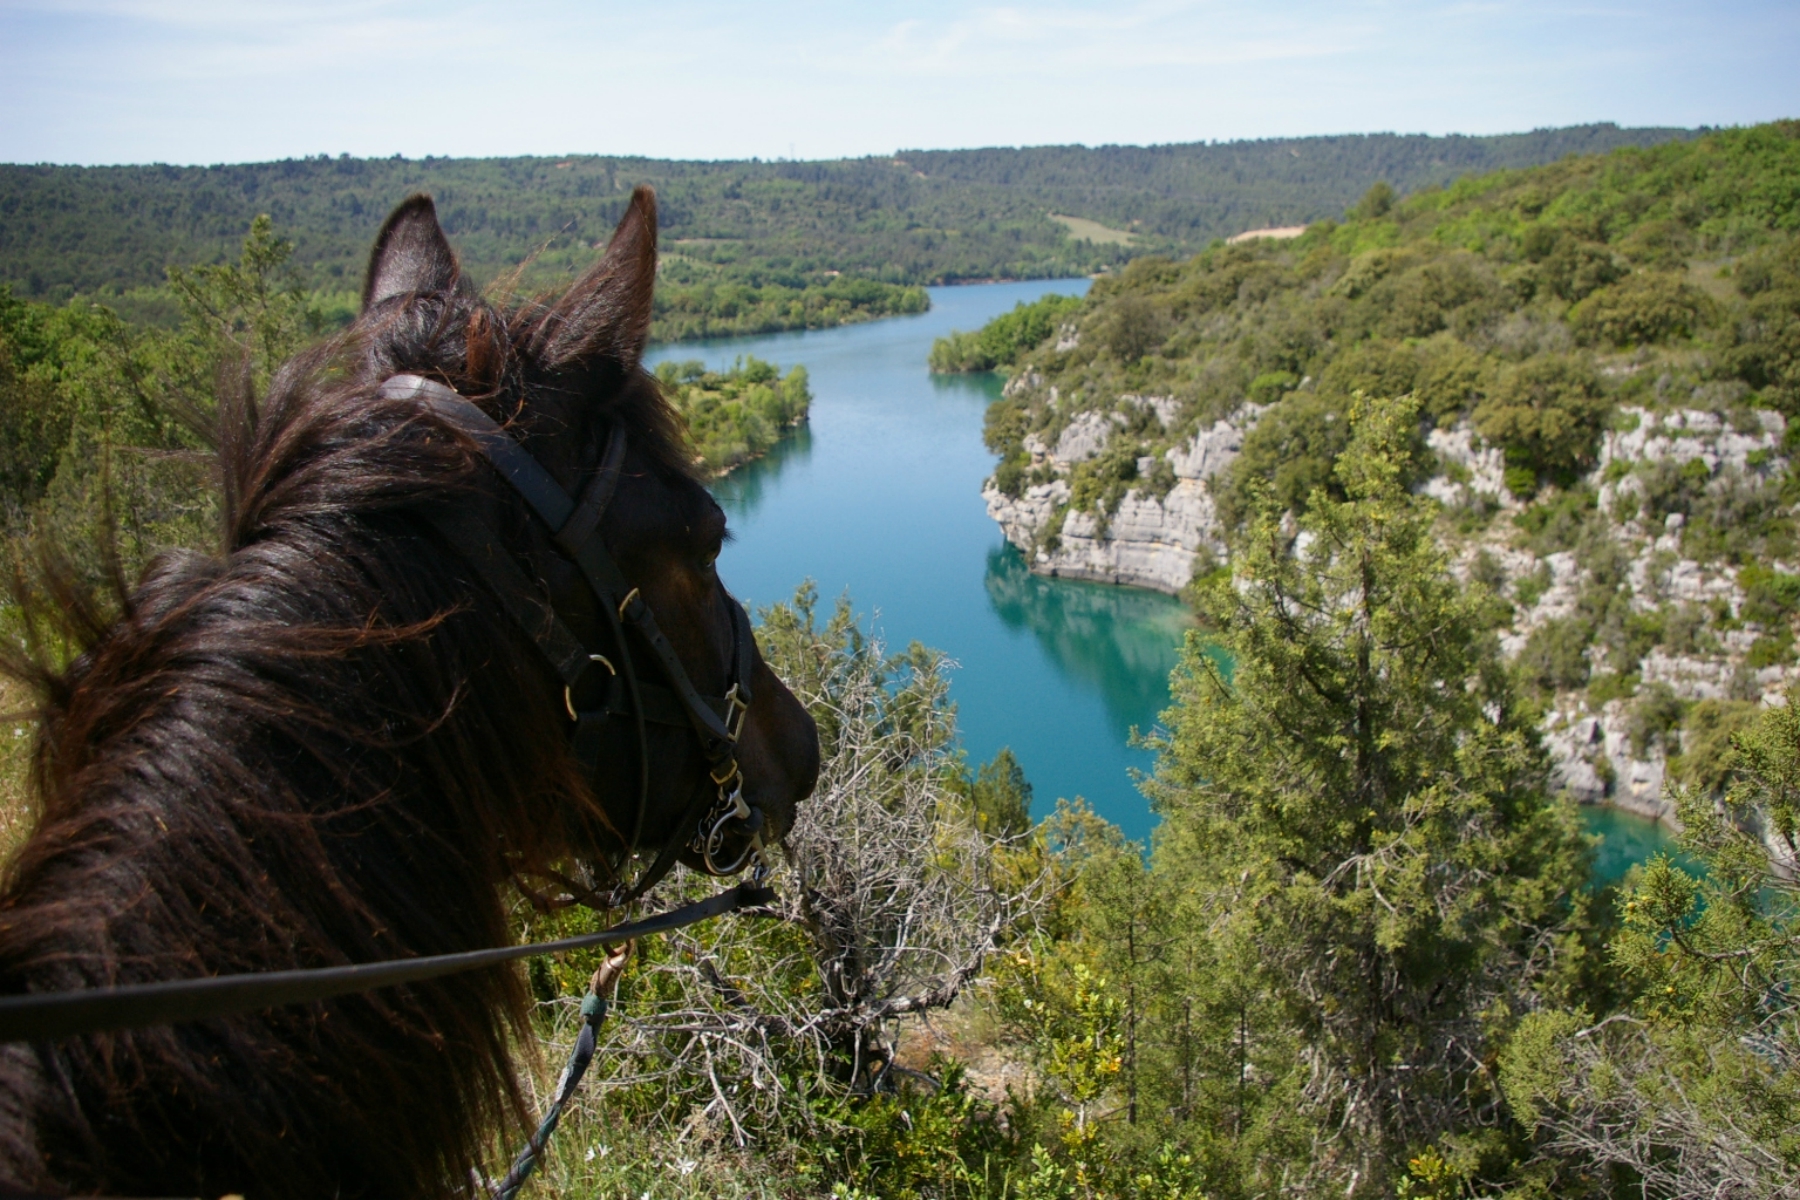 On horseback with Les Chevaux du Verdon